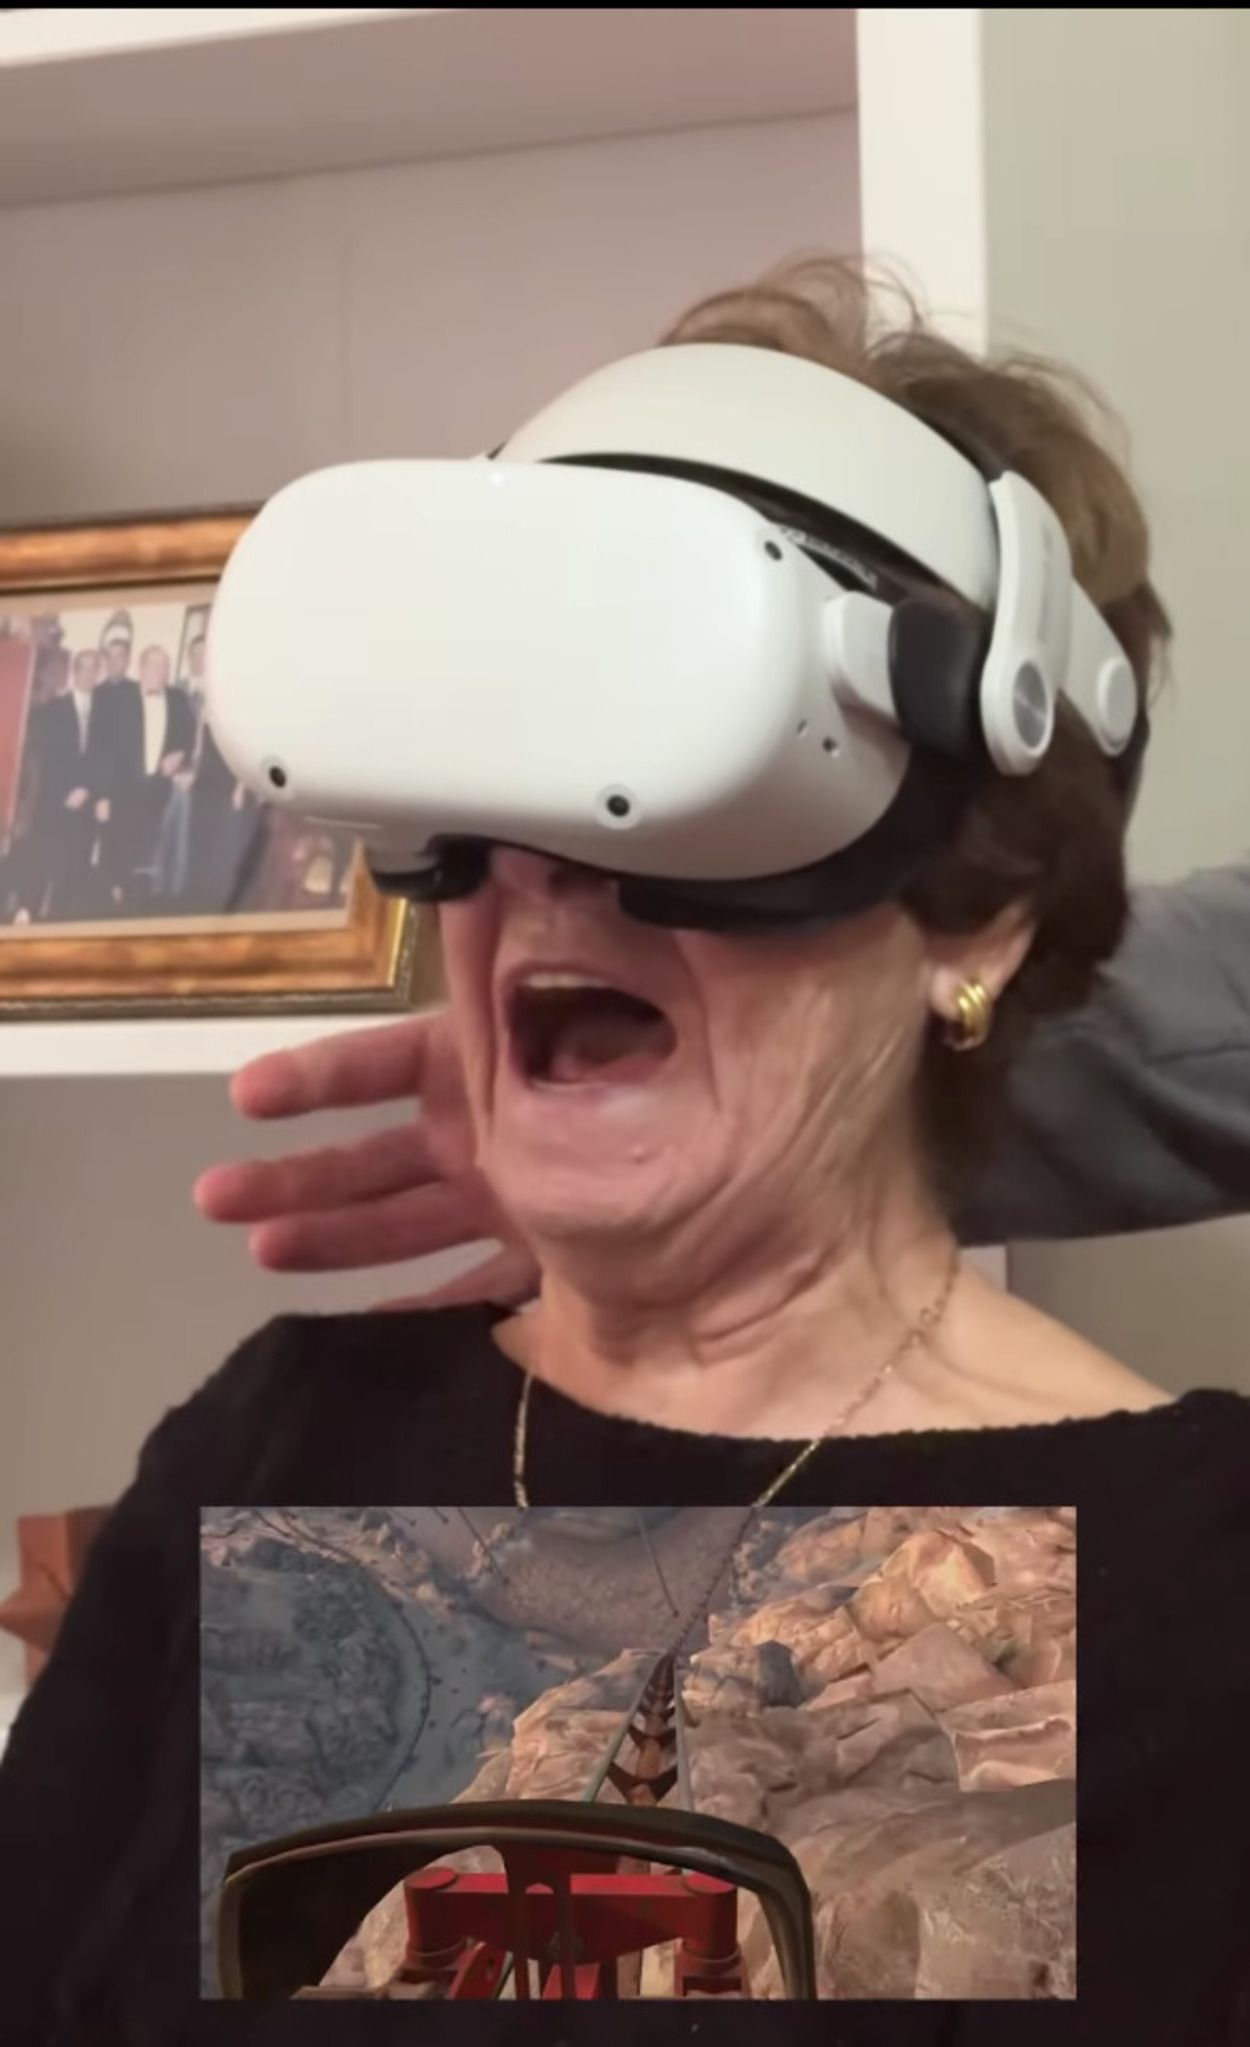 VÍDEO: Le ponen a su abuela unas gafas de realidad virtual y su reacción se hace viral: "Me mareo"